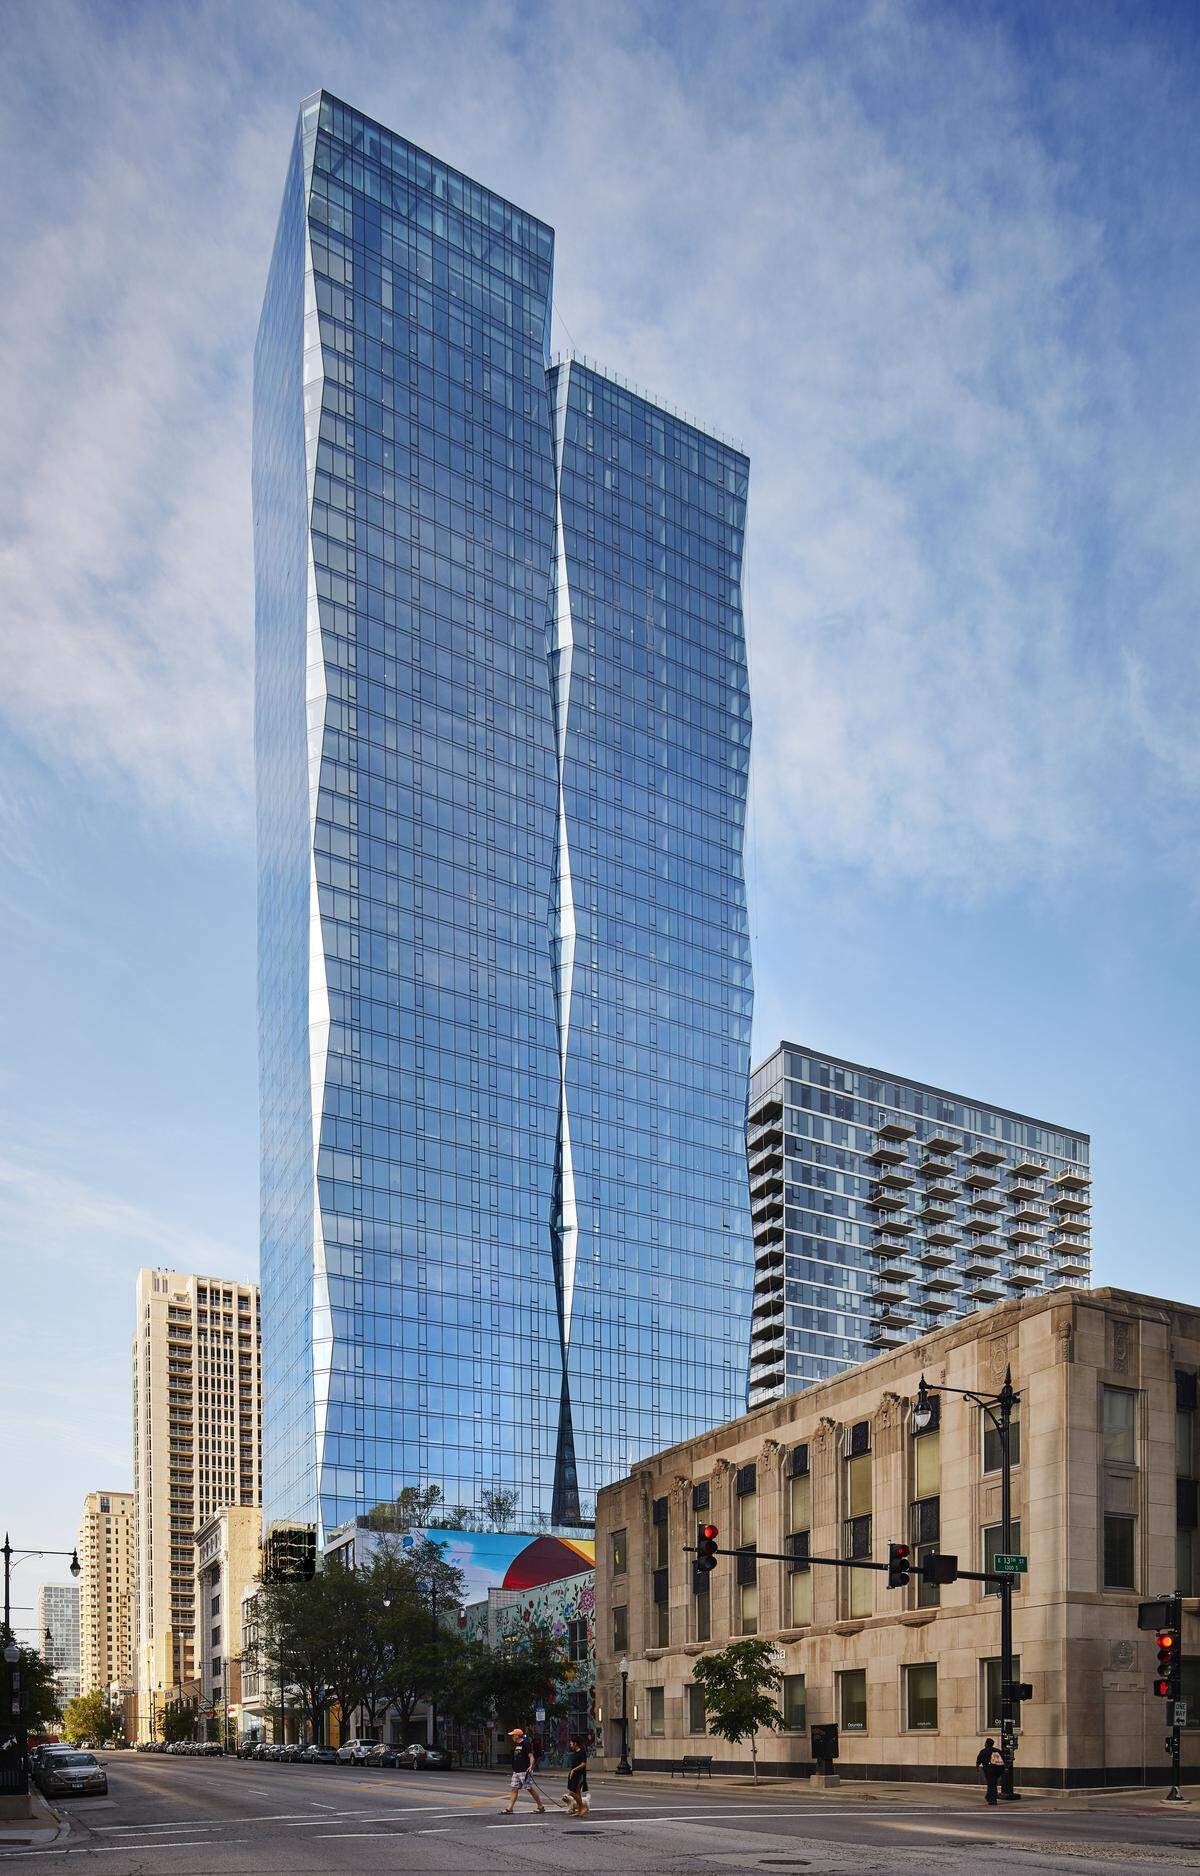 Der Luxus-Wohnturm in Chicago verfügt über 48 Stockwerke und misst 157 Meter. Geplant wurde er vom Architekturbüro Solomon Cordwell Buenz (SCB).